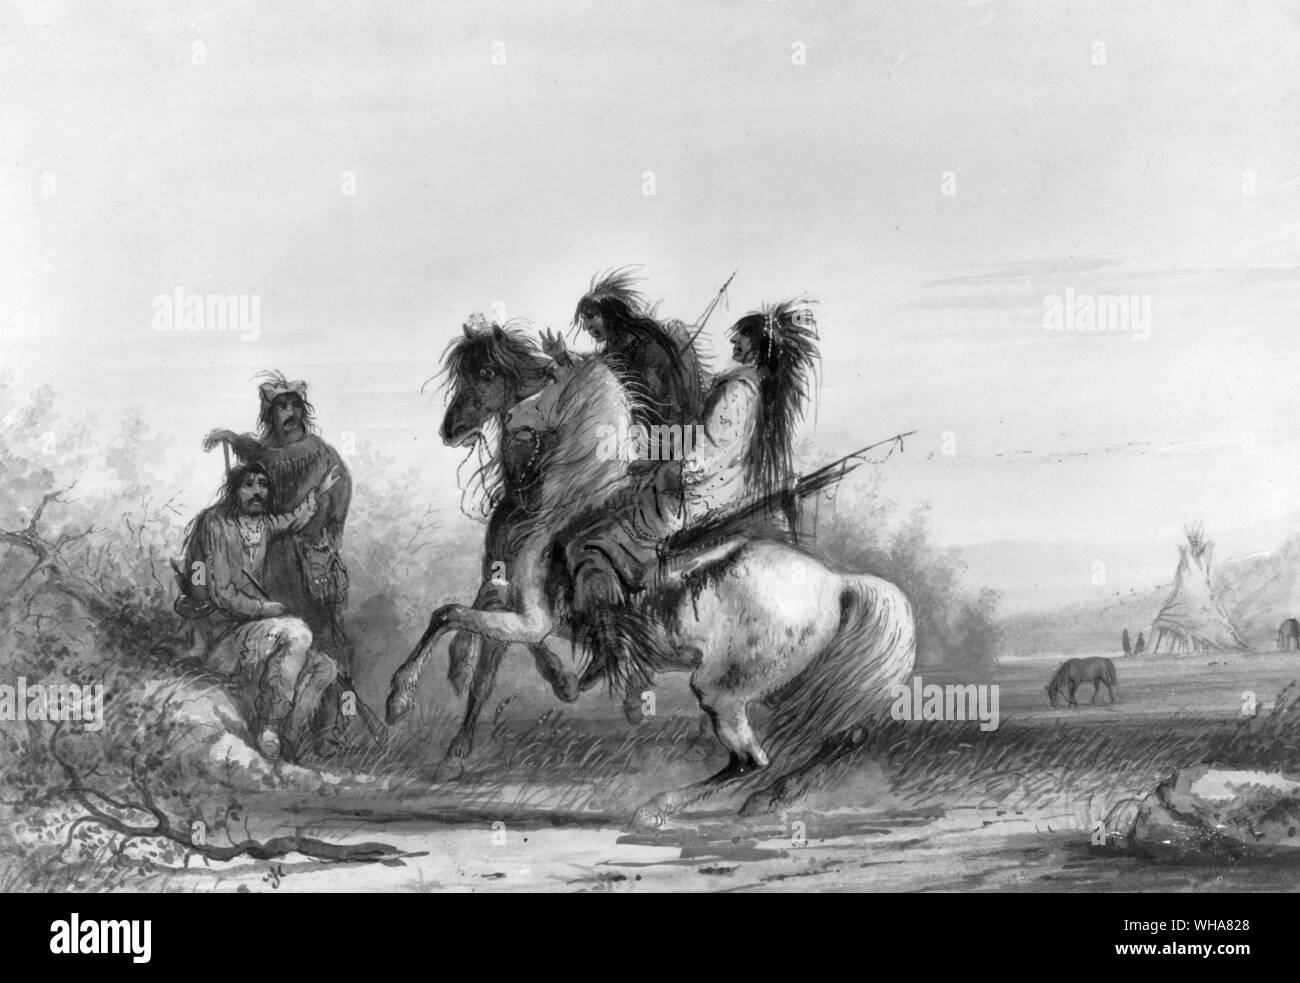 Cacciatori indiani e comunicante da segni. Un J Miller. Cacciatori sono stati i primi americani bianchi a vivere in quello che ora è chiamato il Colorado. White cacciatori in primo luogo è venuto in contatto con gli indiani a ovest del fiume Mississippi nel mid-1700s. Nei primi anni del 1800, il loro numero è aumentato. Ancora, gli indiani delle pianure occidentali e Montagne Rocciose di gran lunga superato i cacciatori. Le relazioni tra i Cacciatori indiani e variata. Alcune tribù erano gentili, altri erano ostili... Cacciatori e indiani hanno avuto molti ostacoli da superare. Esse si ricordarono ultimi incontri che non erano sempre cordiale. Essi hanno parlato Foto Stock